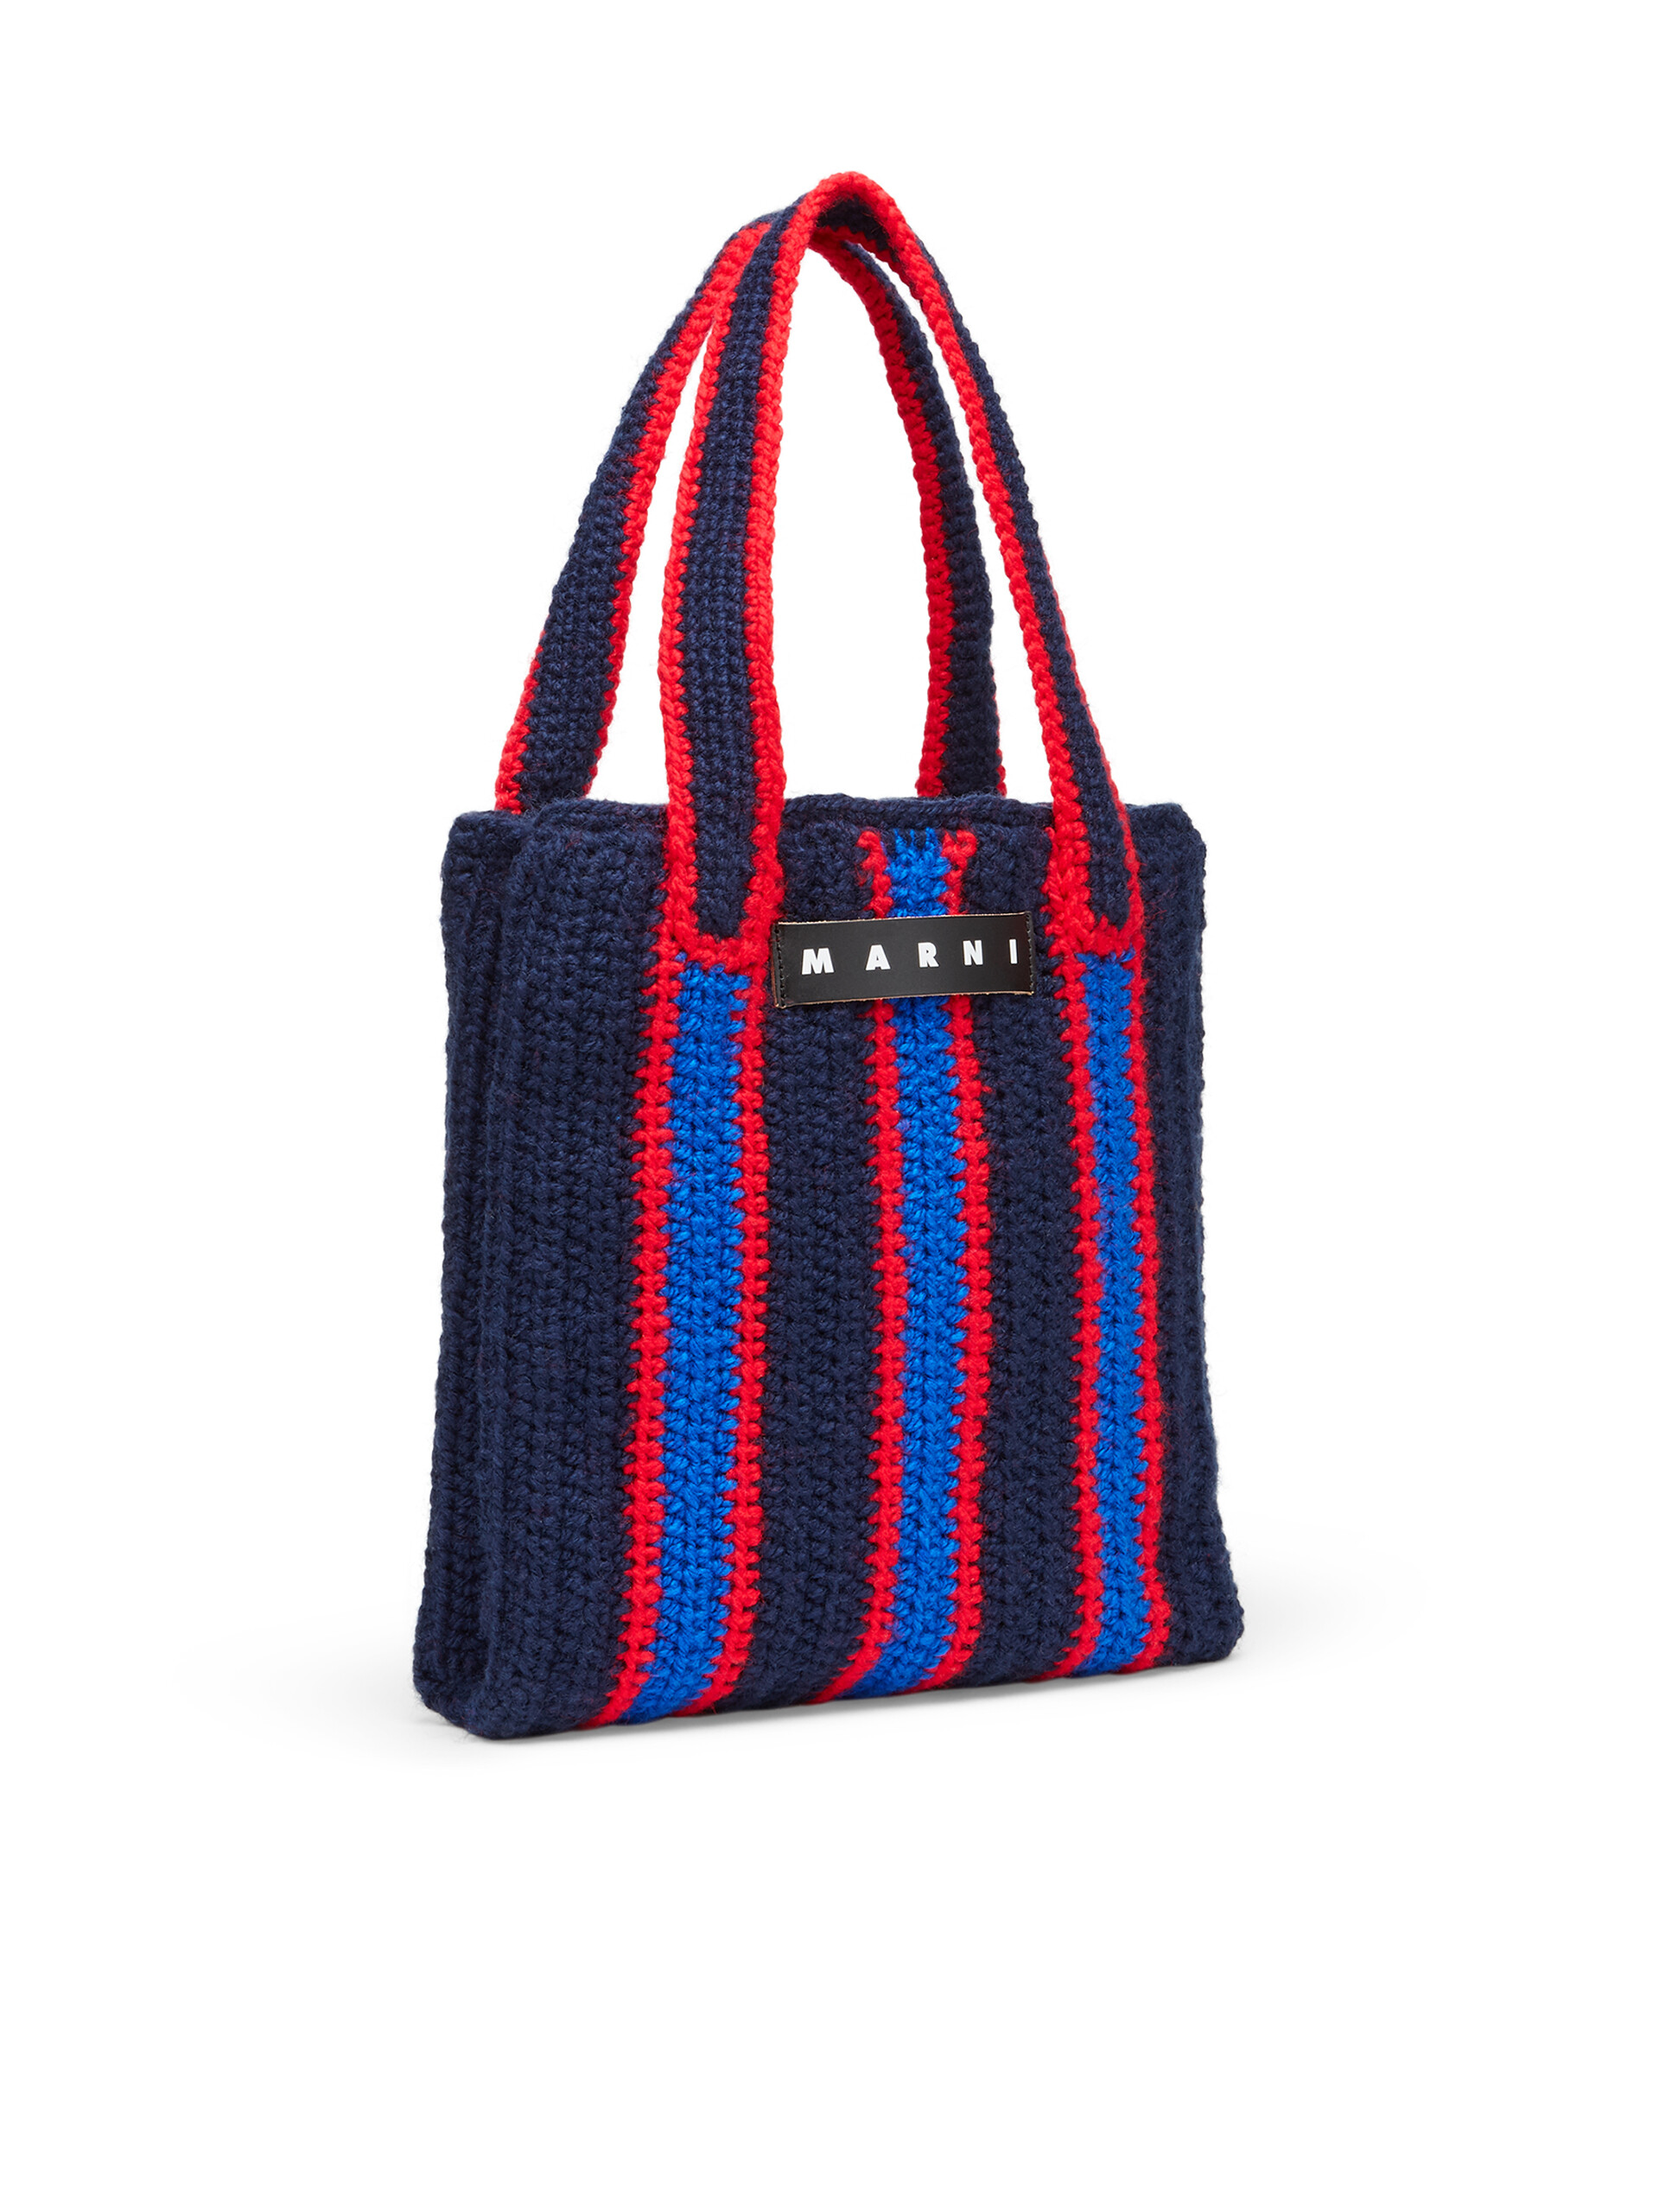 Borsa shopping MARNI MARKET in crochet con motivo rigato in blu rosso e bluette - Borse - Image 2